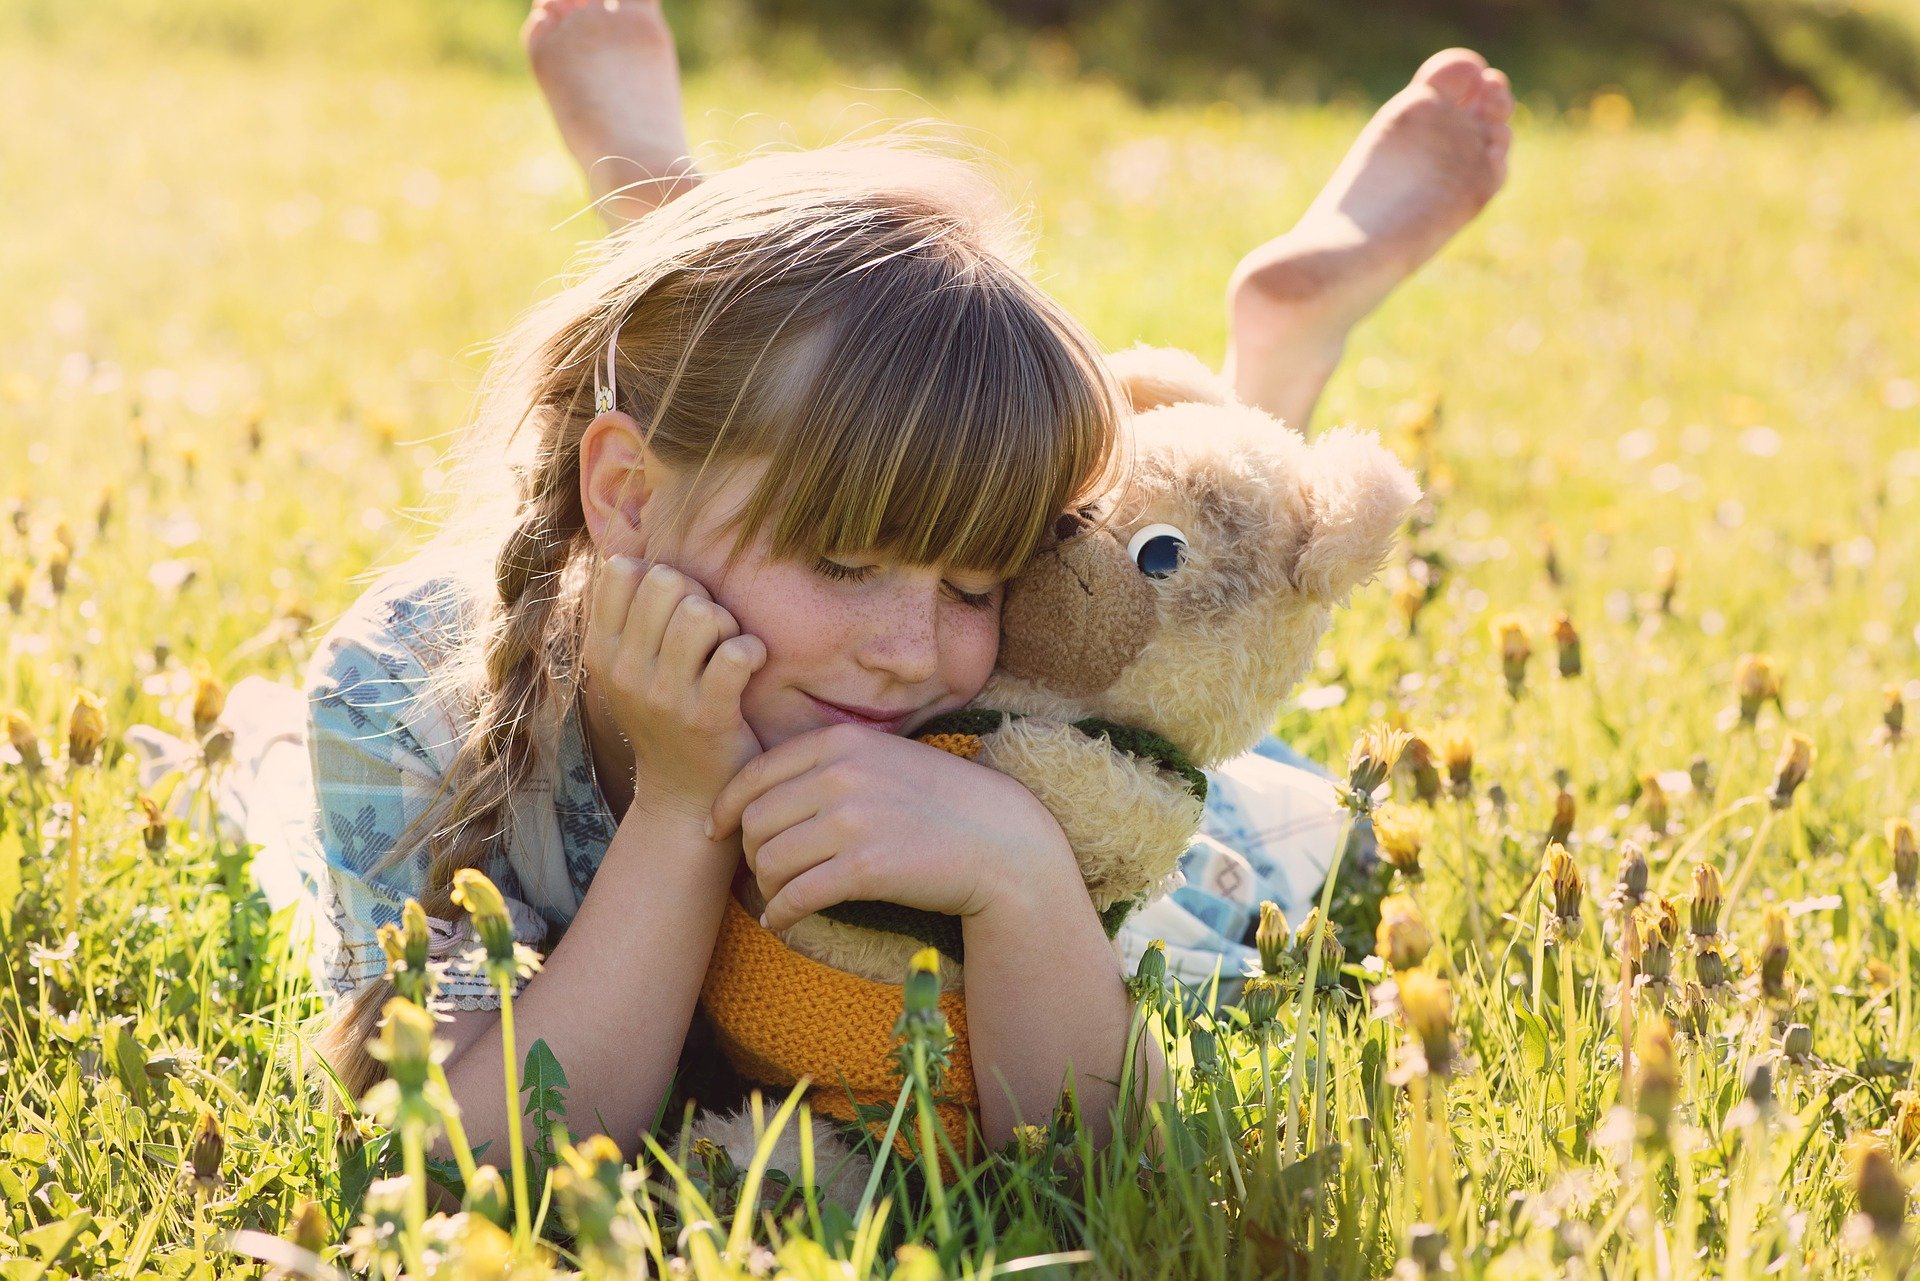 Foto de uma menina em um lugar com grama, abraçada com um urso de pelúcia. Imagem ilustrativa para o texto desinfetar bichinhos de pelúcia.